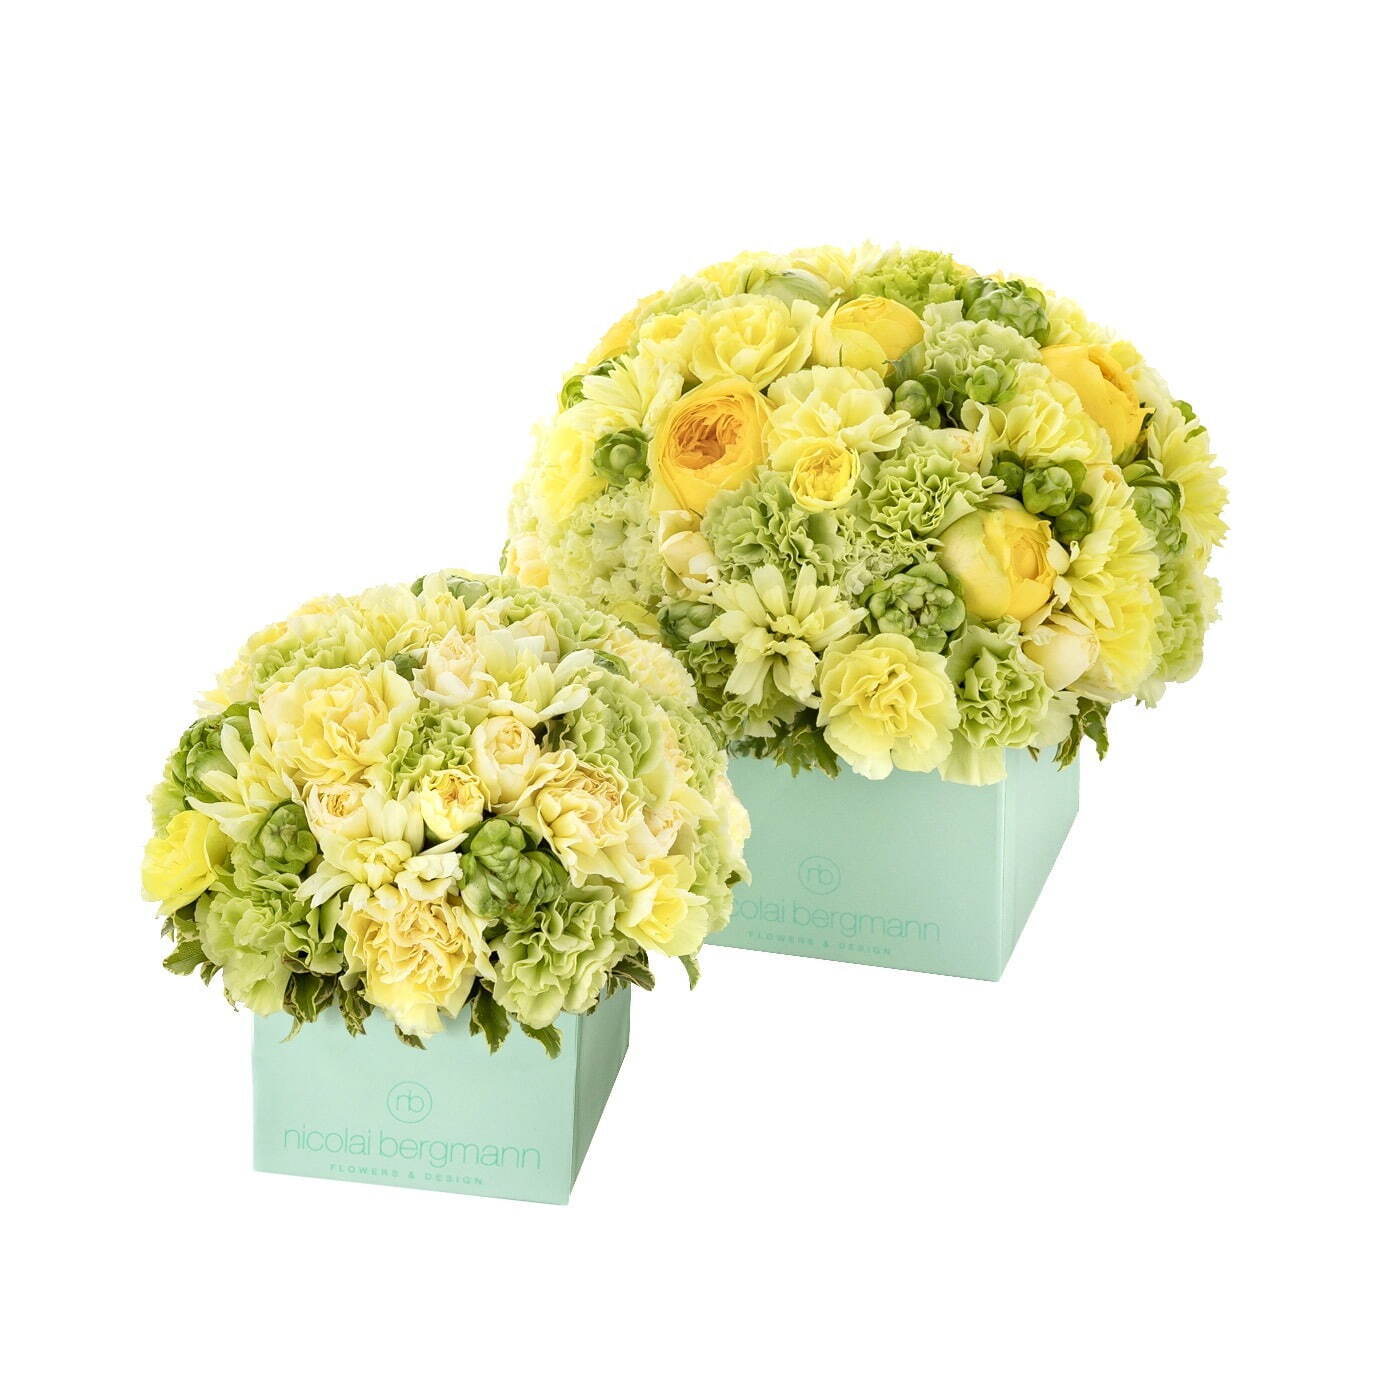 ニコライ バーグマンの夏限定フラワーボックス、コーラルグリーンのボックスにパステルカラーの花々｜写真4